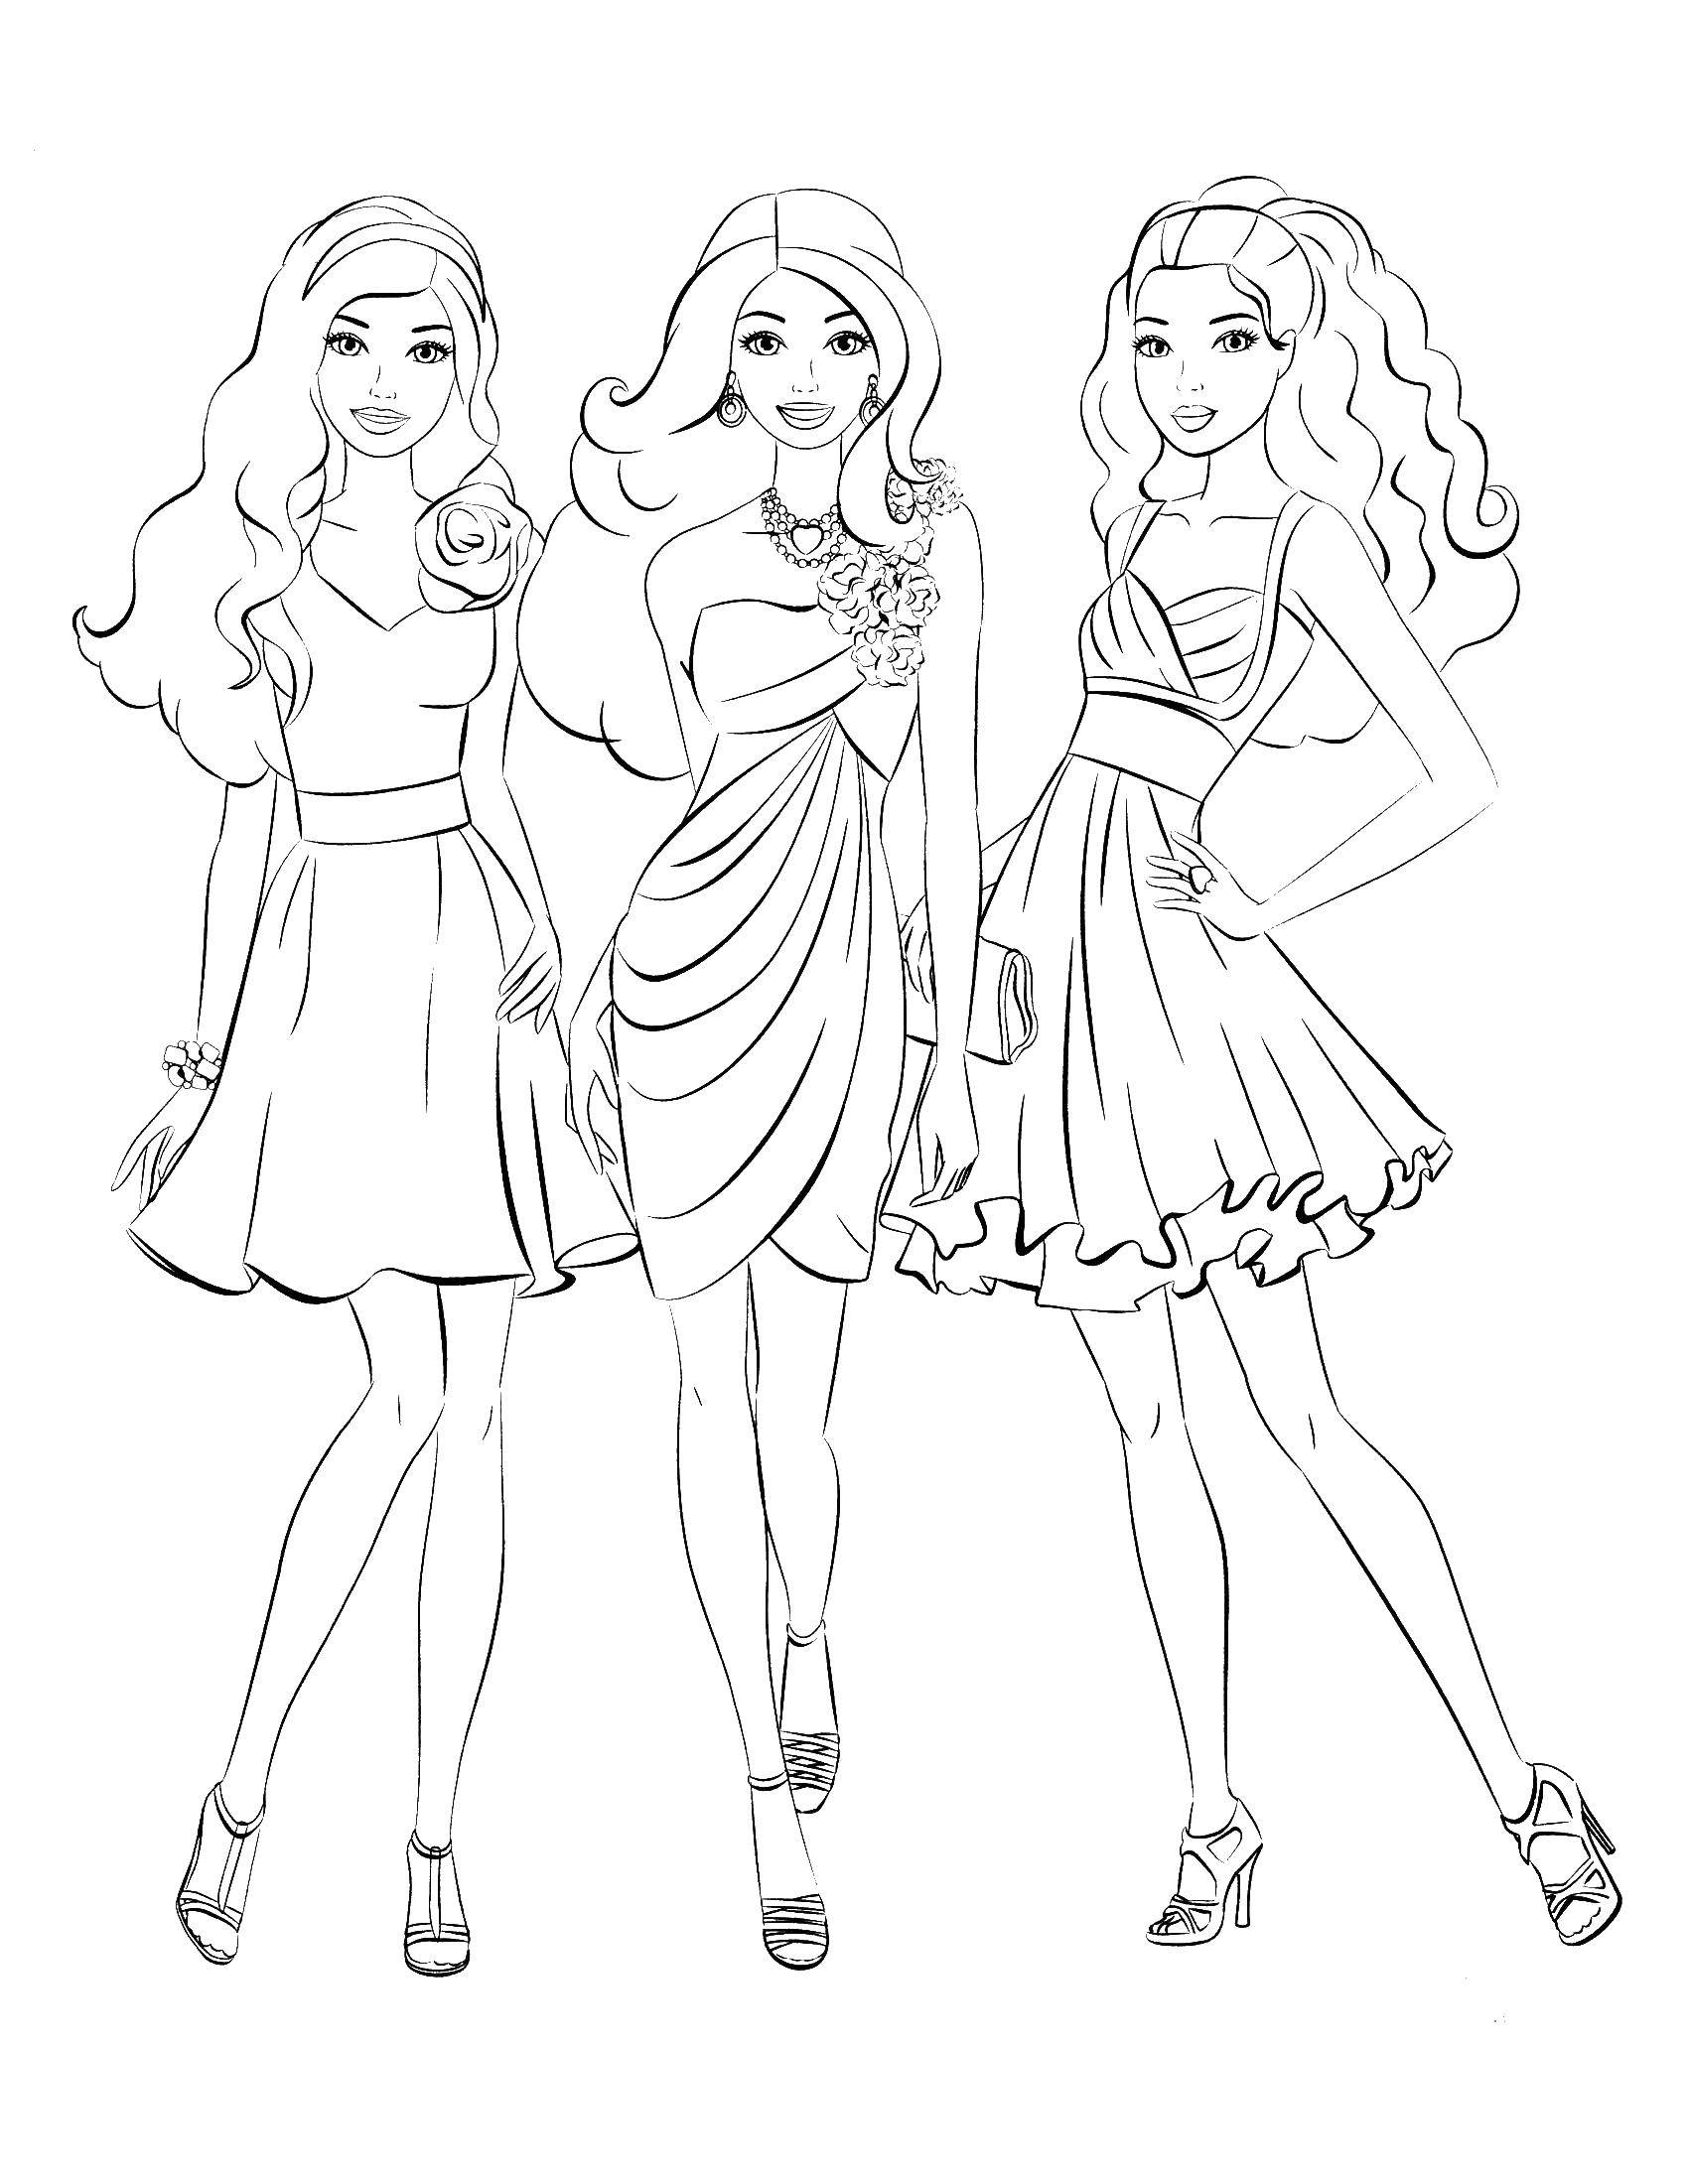 Название: Раскраска Три барби в танцевальных платьях. Категория: Барби. Теги: барби, платья, девочки.